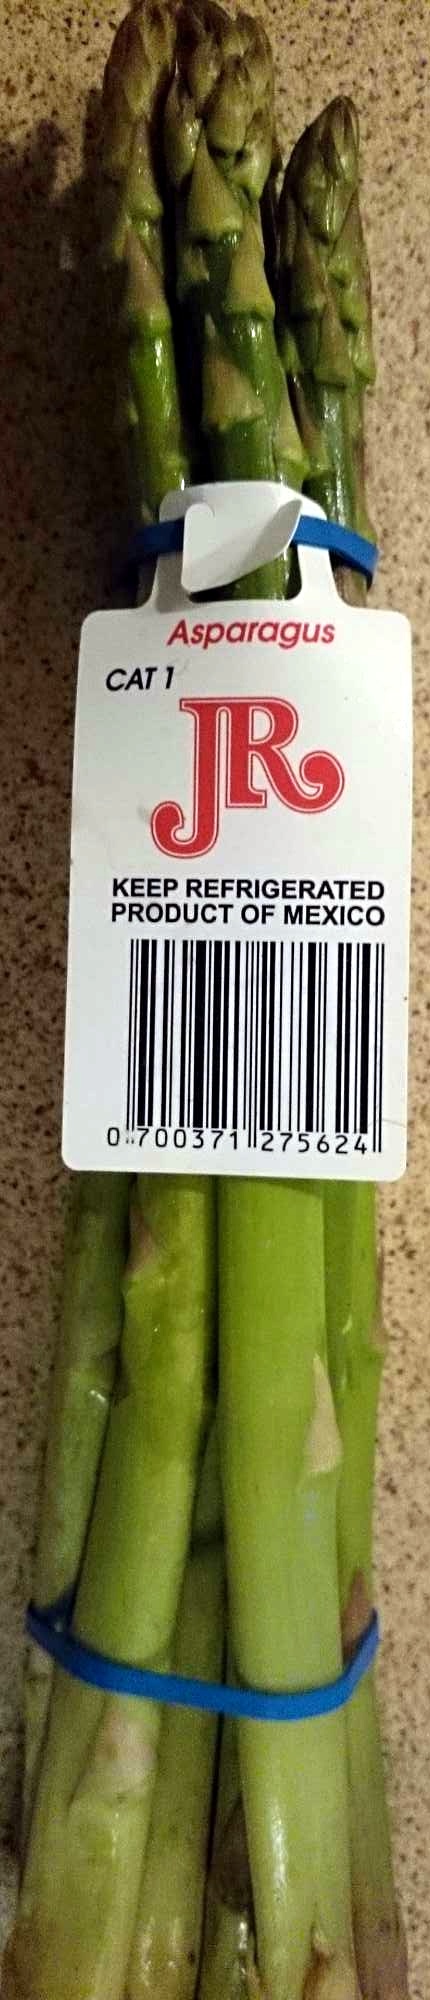 Asparagus Fresh - Product